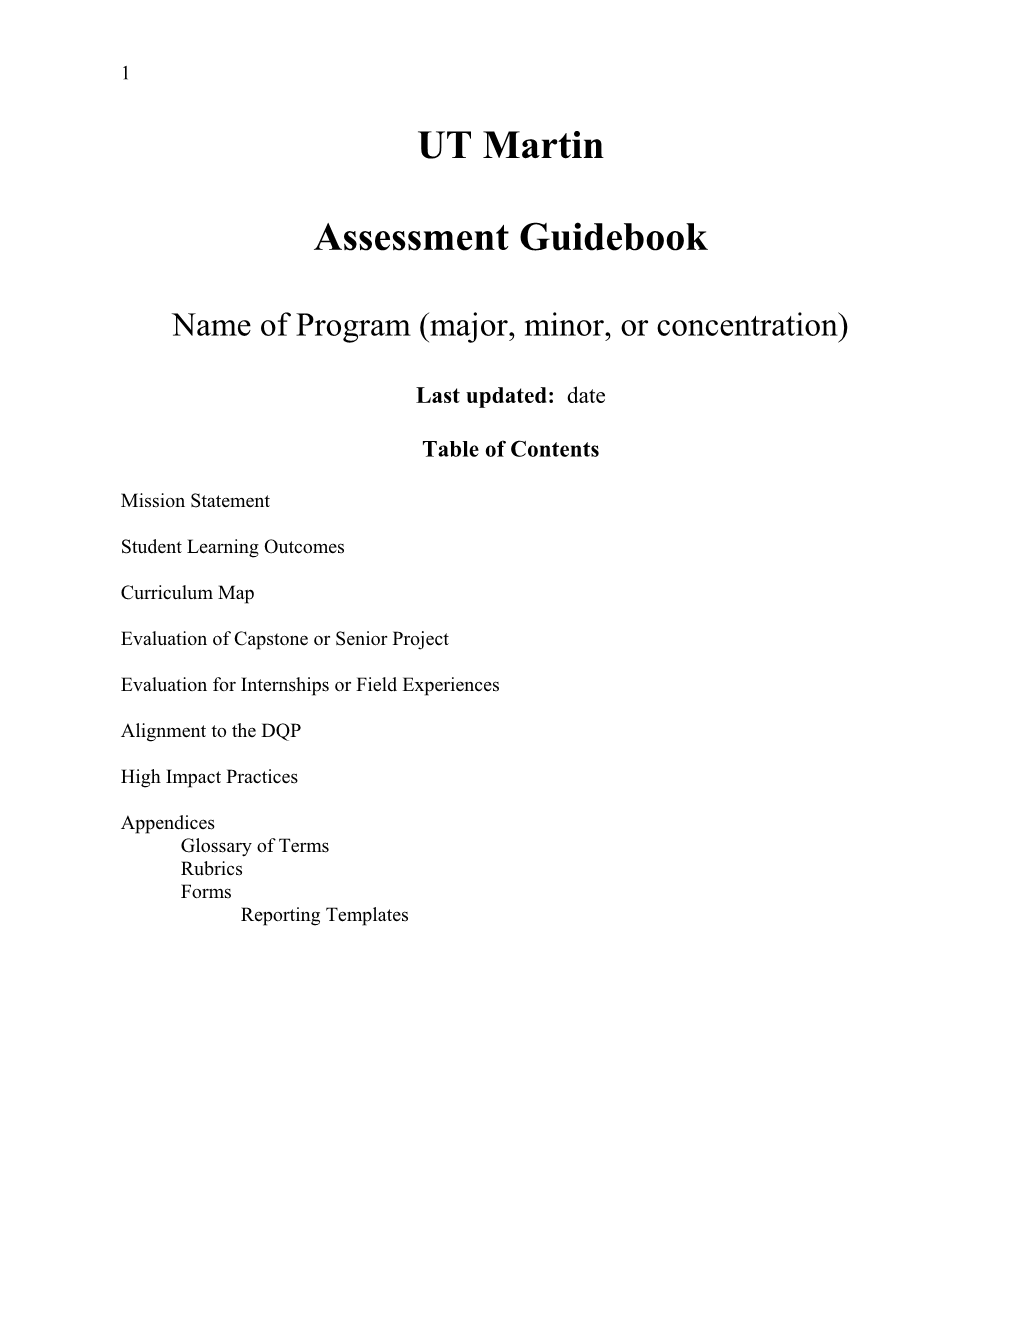 Assessment Guidebook